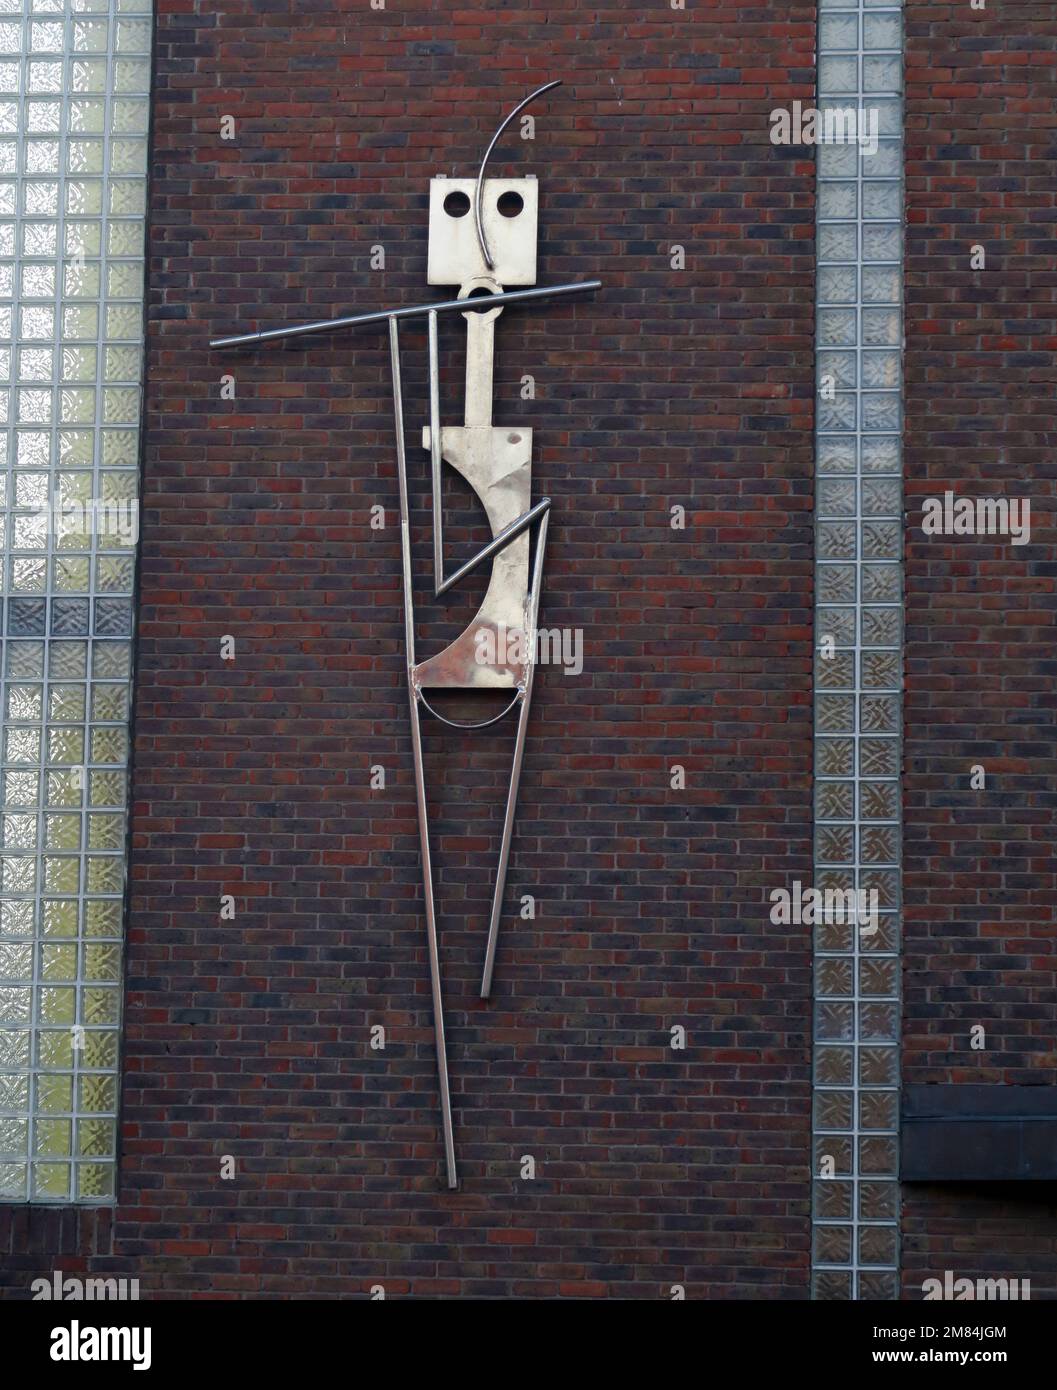 Metal art, figura che suona un flauto, attaccato ad un muro di mattoni, 8 King St N, Dublino, D07 X704, Eire, Irlanda Foto Stock